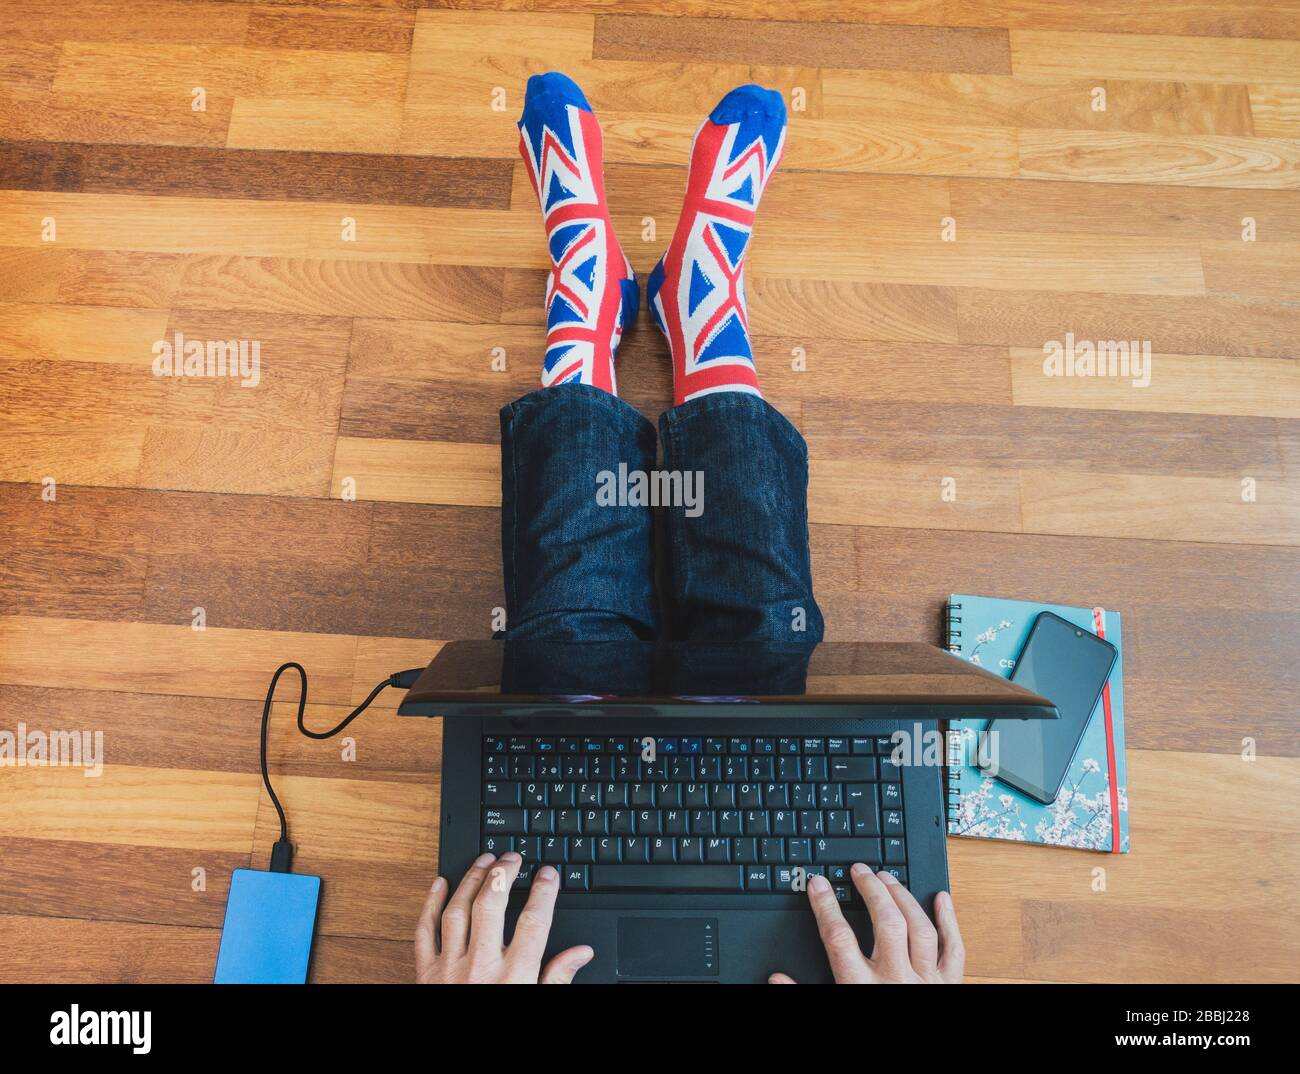 Homme portant une chaussette drapeau Jack Union assise sur parquet avec ordinateur portable. Travailler de chez soi, isolement de soi, distanciation sociale, Coronavirus... concept Banque D'Images